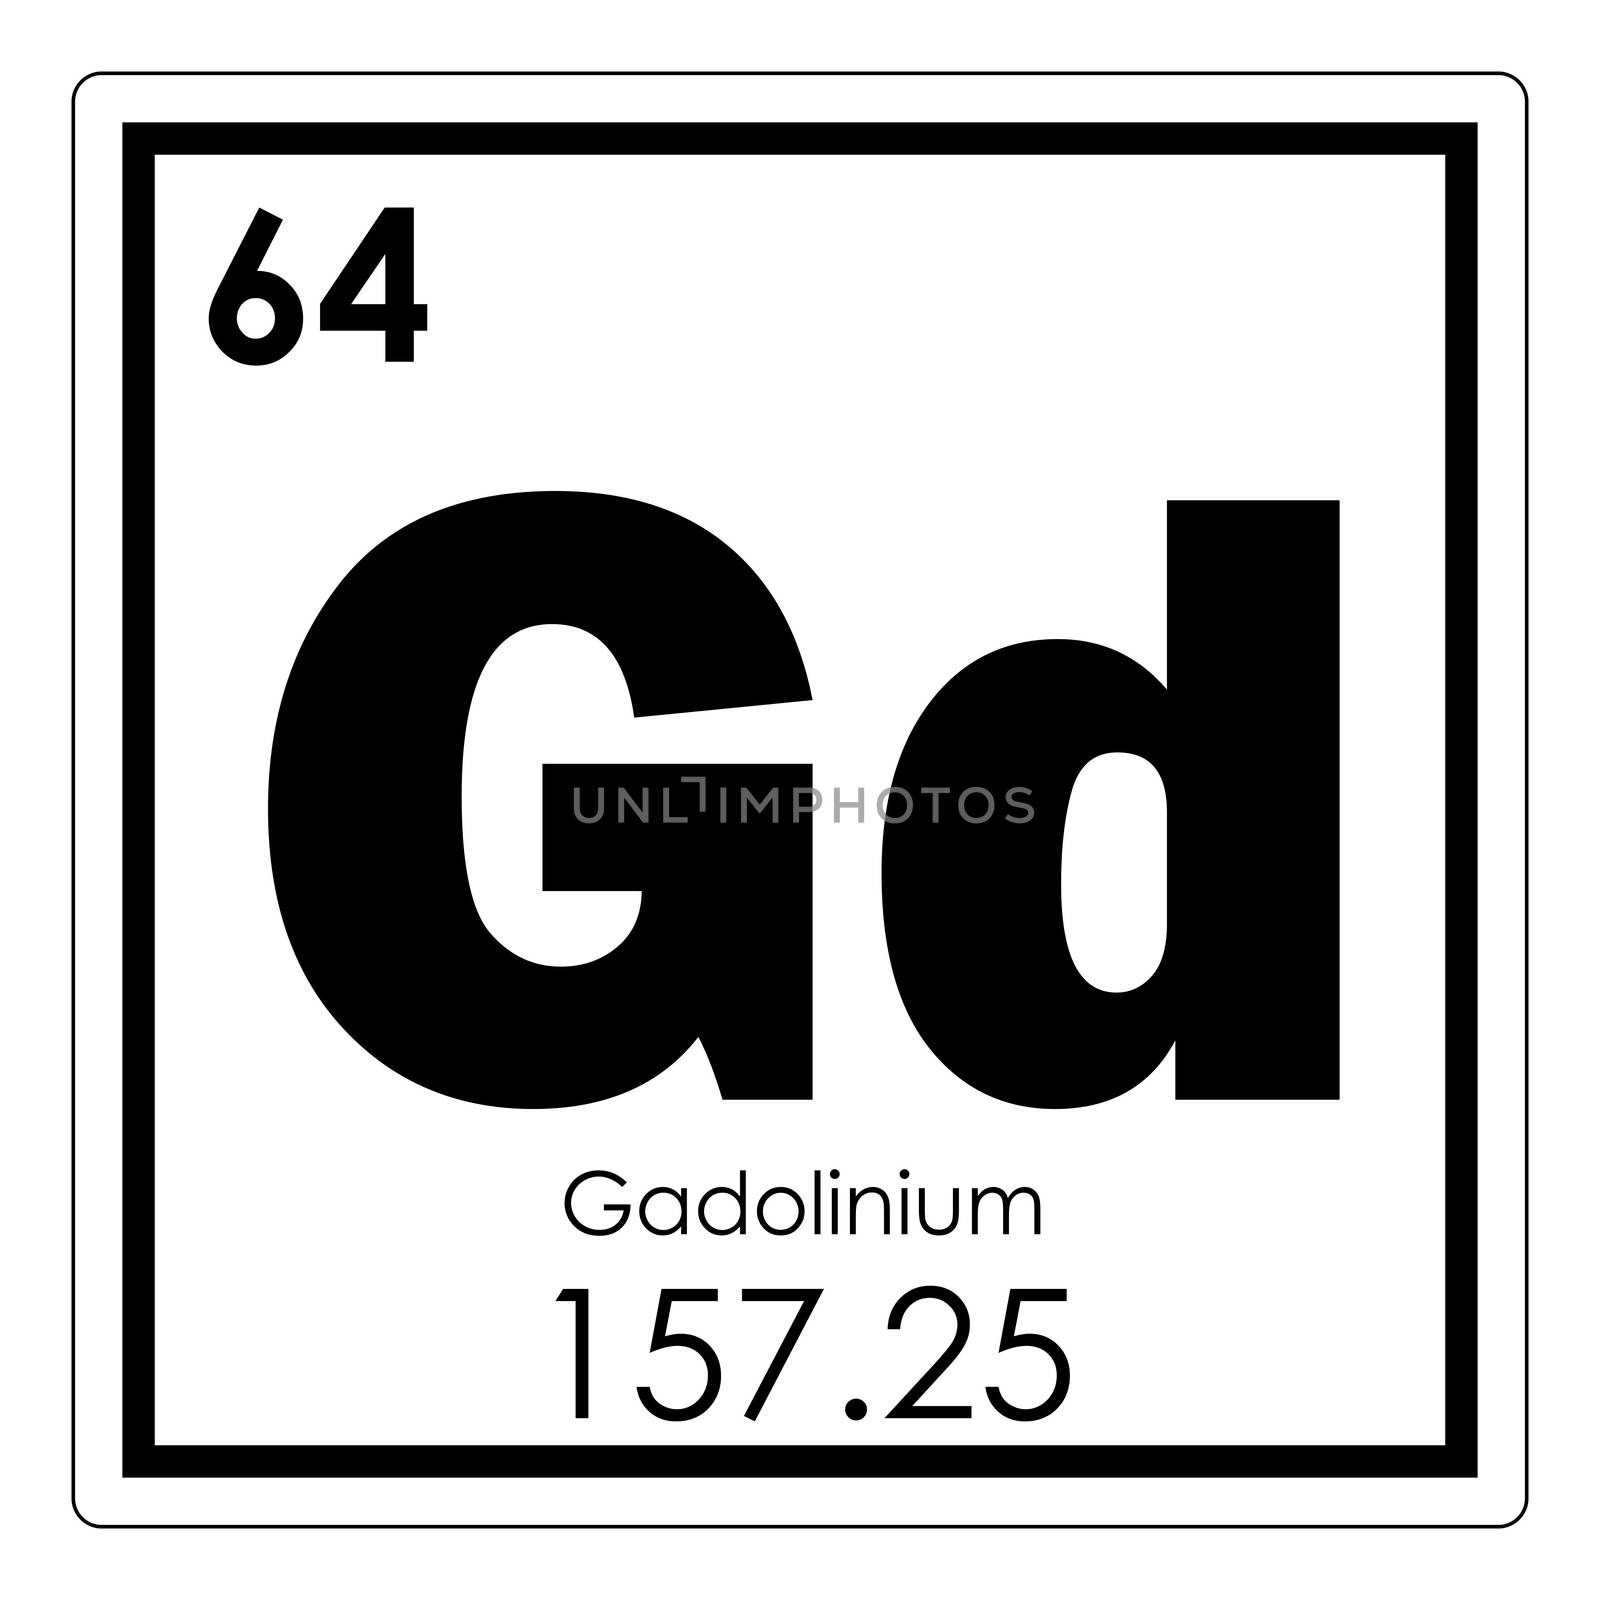 Gadolinium chemical element by tony4urban